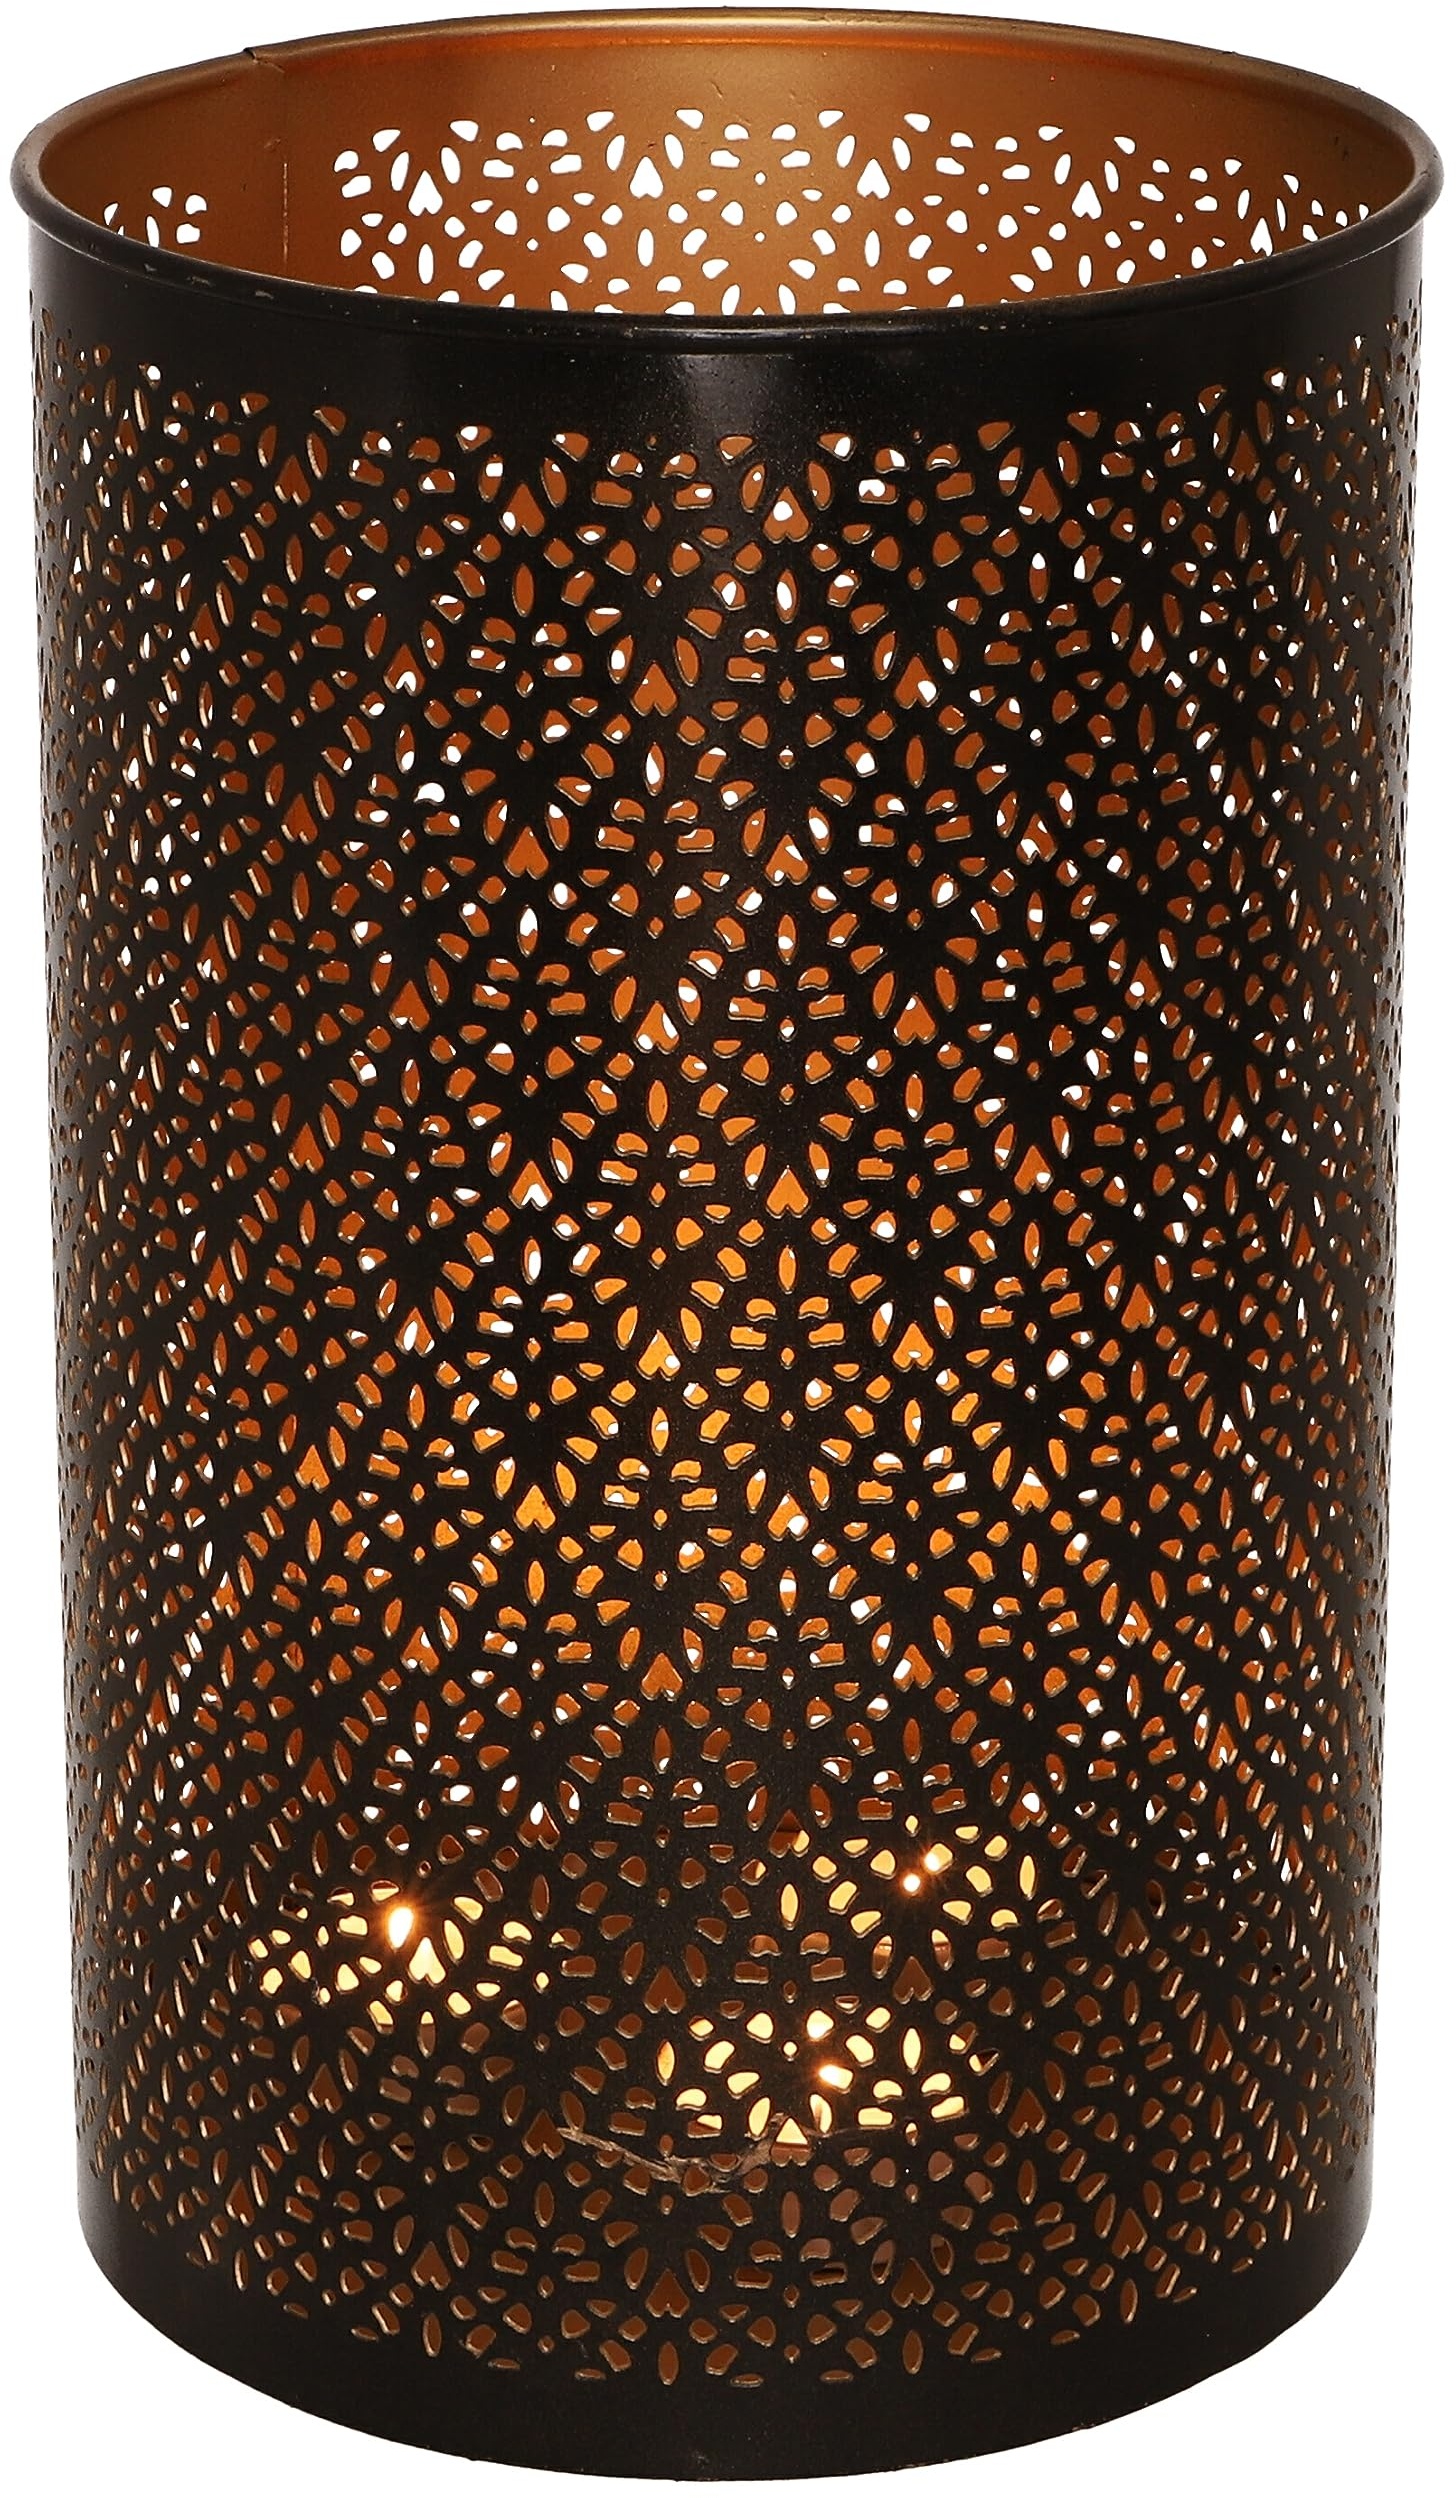 GURU SHOP Runde Metall Windlicht Leuchte, Passend für Teelicht Kerzen Oder als Deckenlampe Verwendbar - Modell 7, Braun, Größe: 25 cm, Teelichthalter & Kerzenhalter